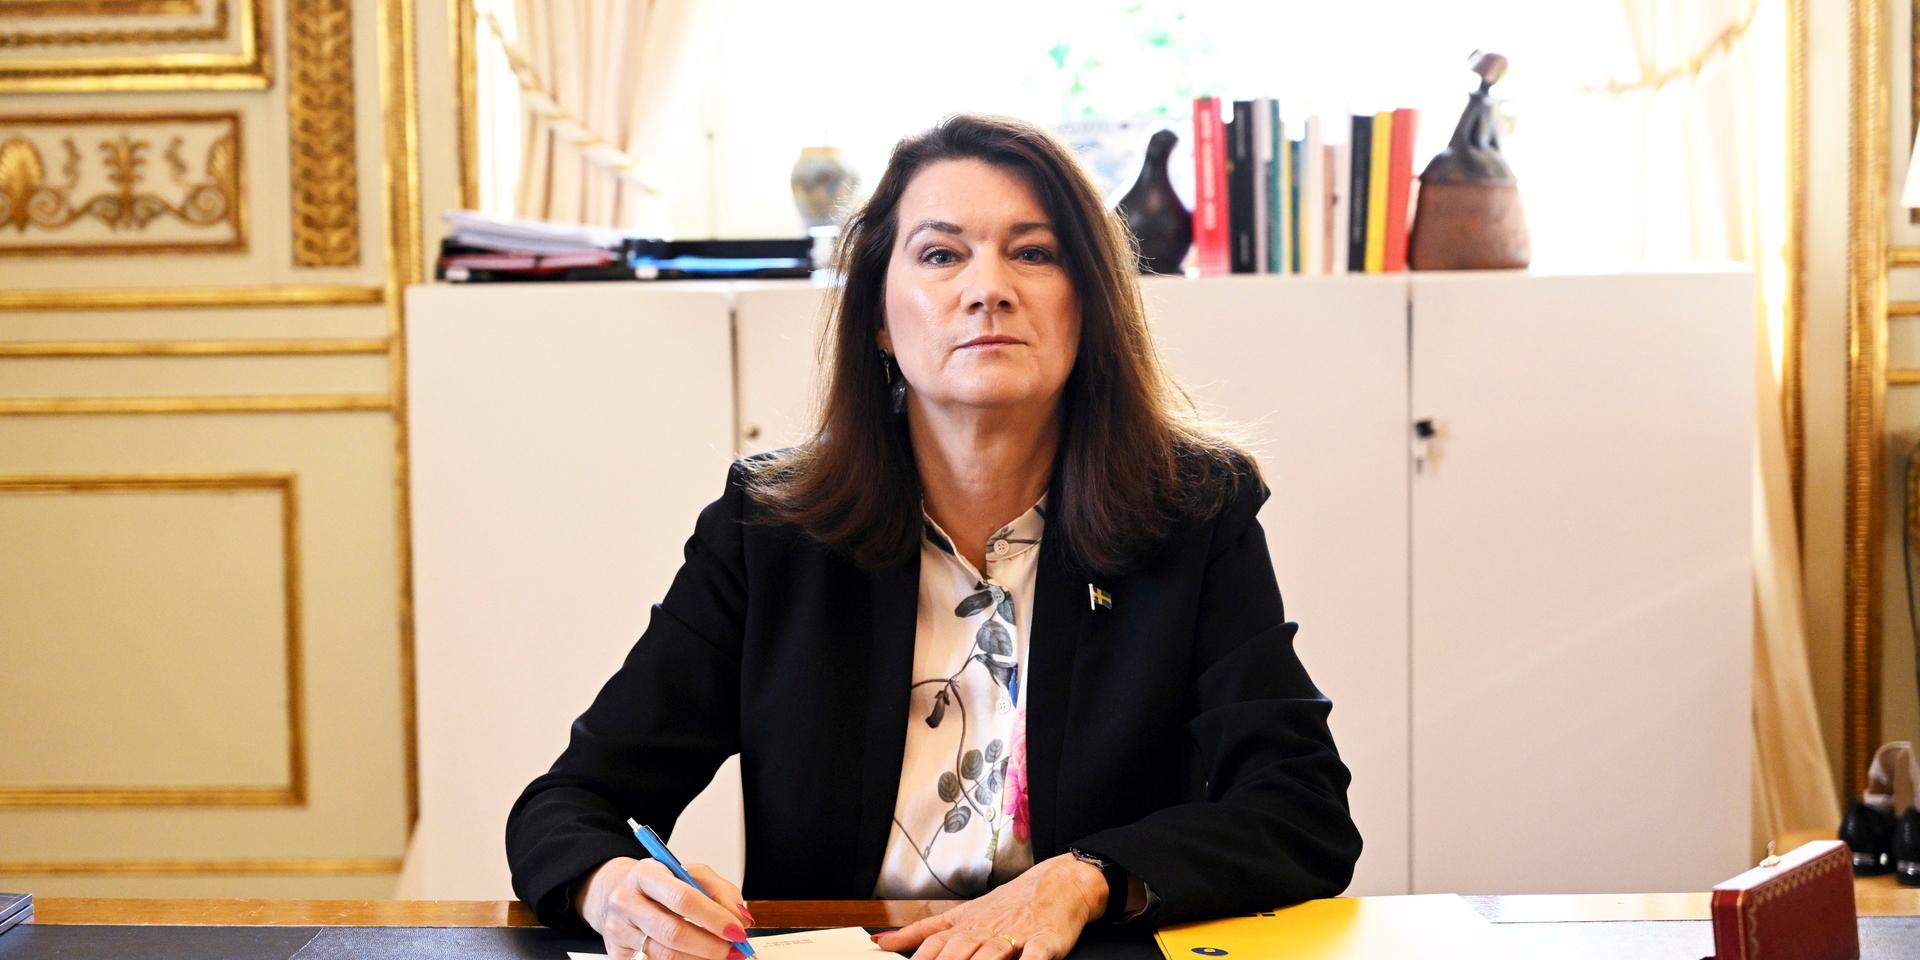 .Utrikesminister Ann Linde (S) undertecknar Sveriges Natoansökan, på utrikesdepartementet i Stockholm. Hon säger att 'diplomatiska ansträngningar' pågår för att bemöta Turkiets nyuttalade motstånd.